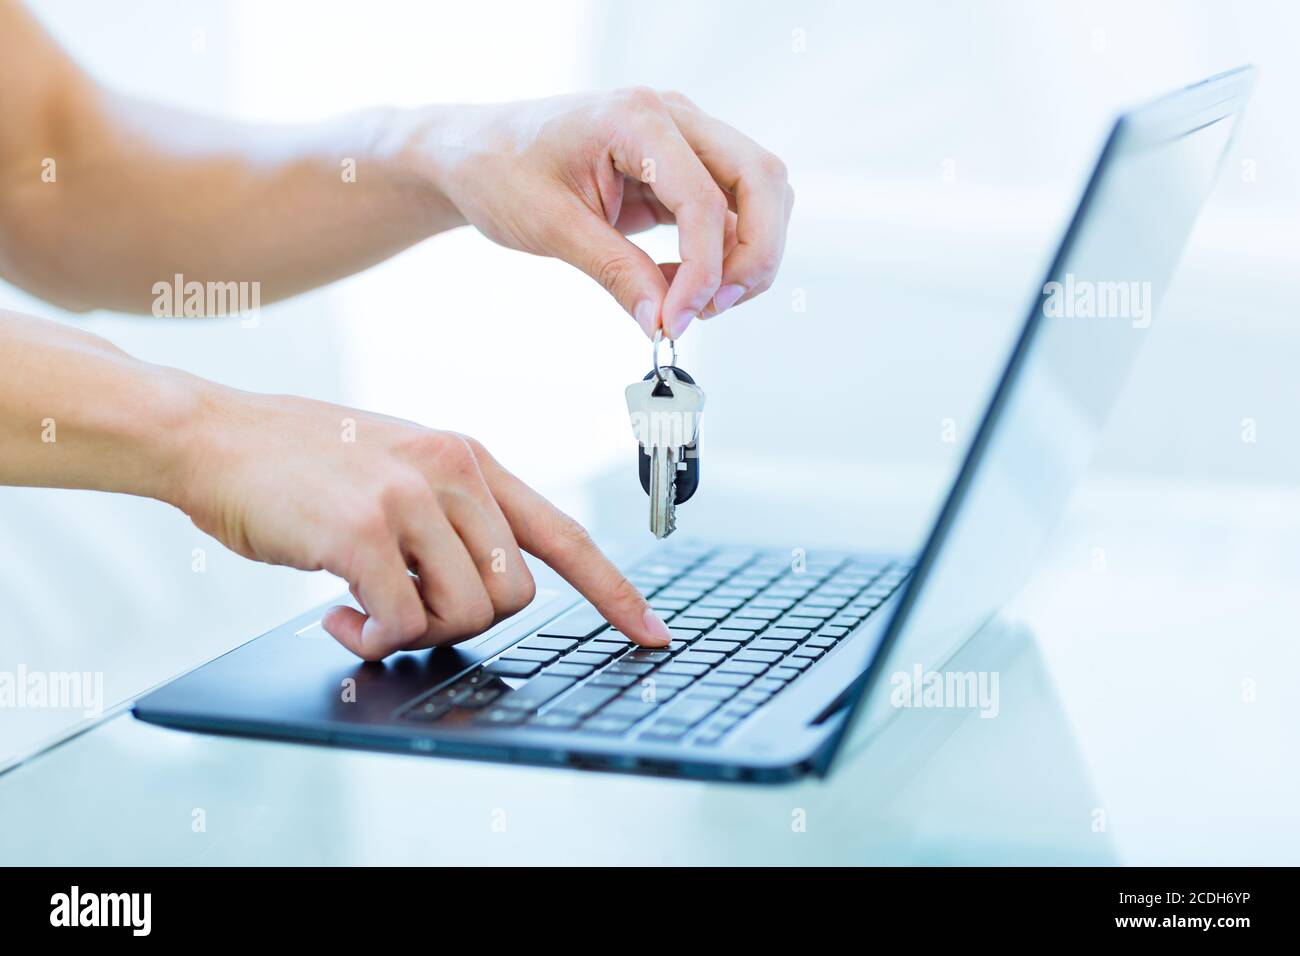 Nahaufnahme der Hände einer männlichen Person, die die Tasten beim Tippen auf einer Laptop-Tastatur hält. Online Buchung und Vermietung Konzept. Stockfoto